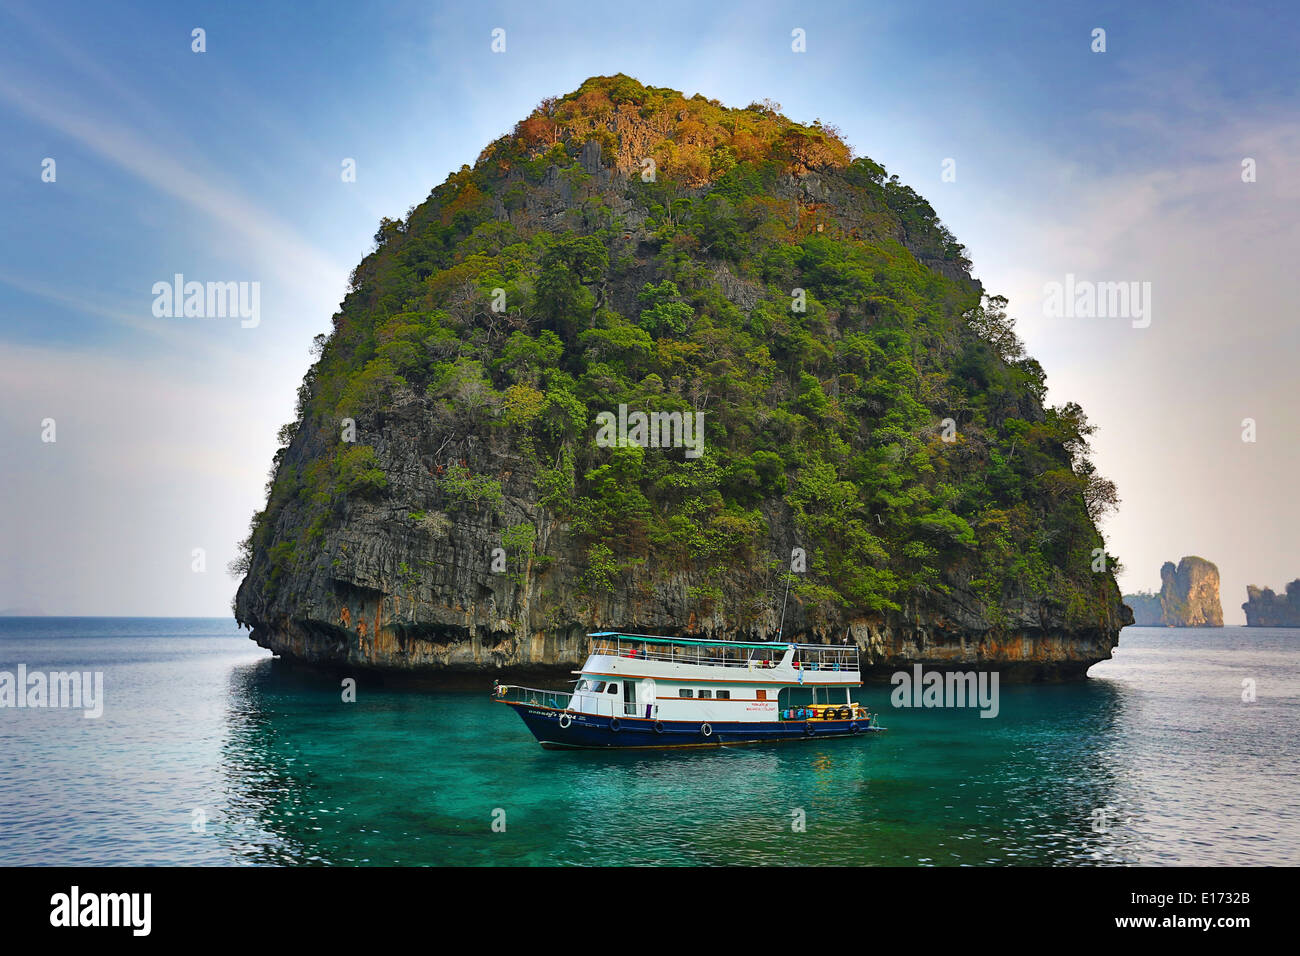 Et de bateaux d'excursion sur l'île de Ko Phi Phi Le, l'île de la mer d'Andaman, Thaïlande Banque D'Images